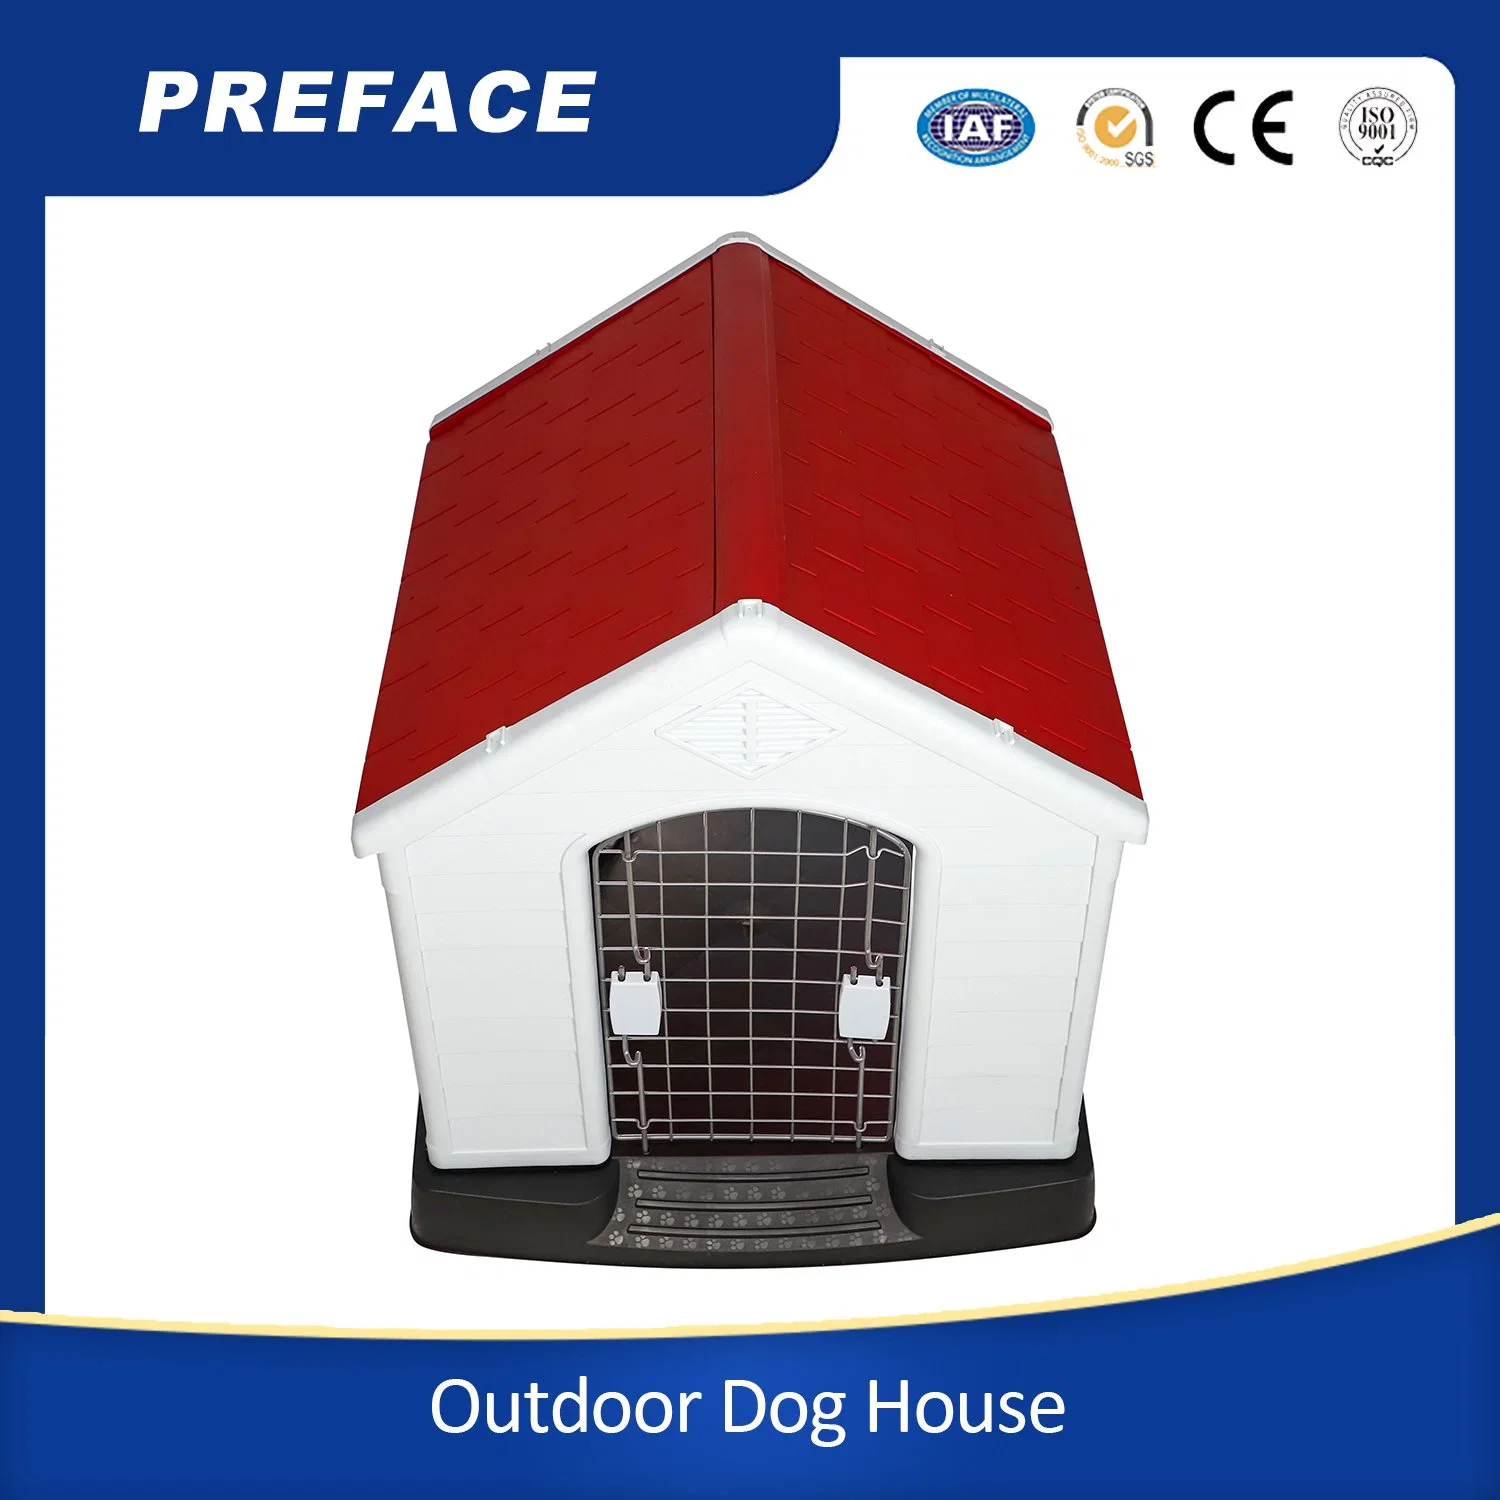 Водонепроницаемый и вентилируемый питомник для собак-собак All Weather Dog House Уличный пластиковый дом для собак из ПЭТ